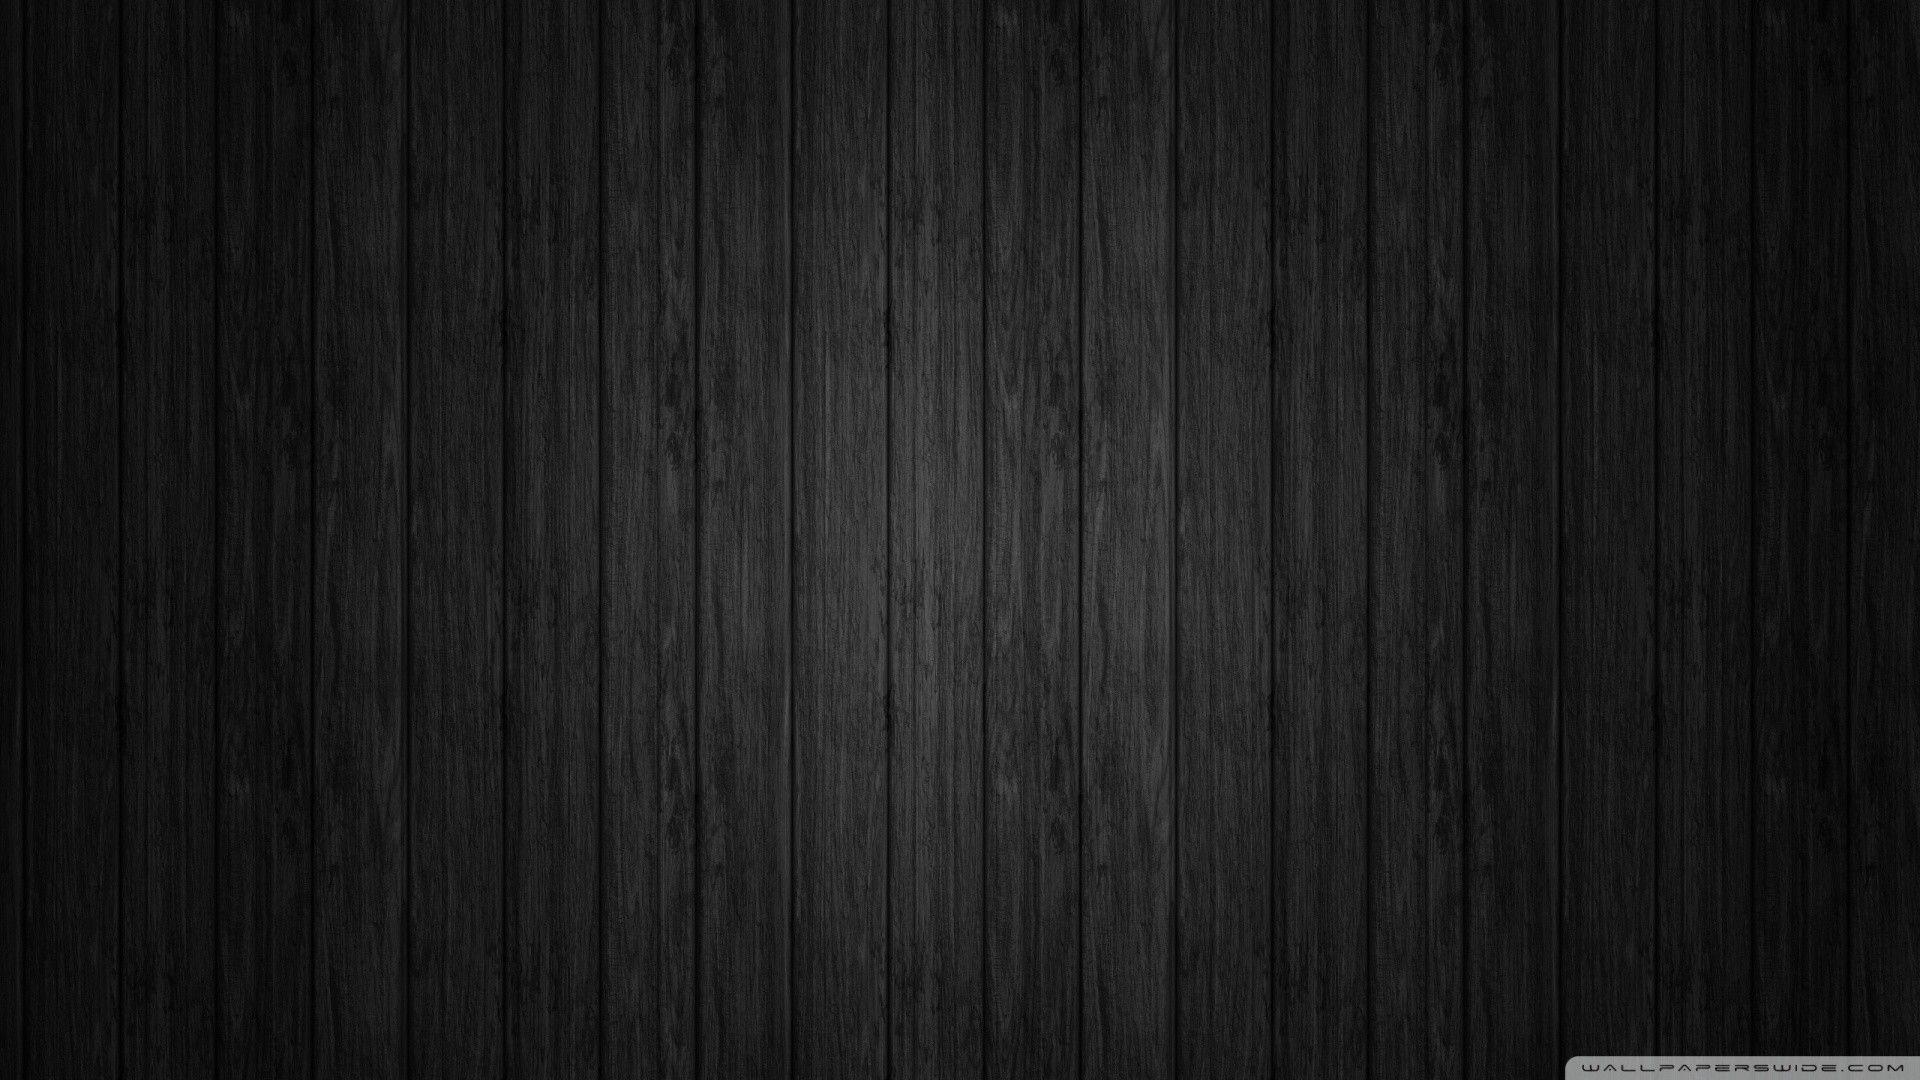 Hình nền gỗ đen là sự lựa chọn hoàn hảo để tôn lên sự tinh tế và sang trọng của bạn. Với hình nền này, mọi thứ sẽ trở nên đặc biệt và độc đáo hơn. Hãy tải về và trải nghiệm ngay thôi nào.